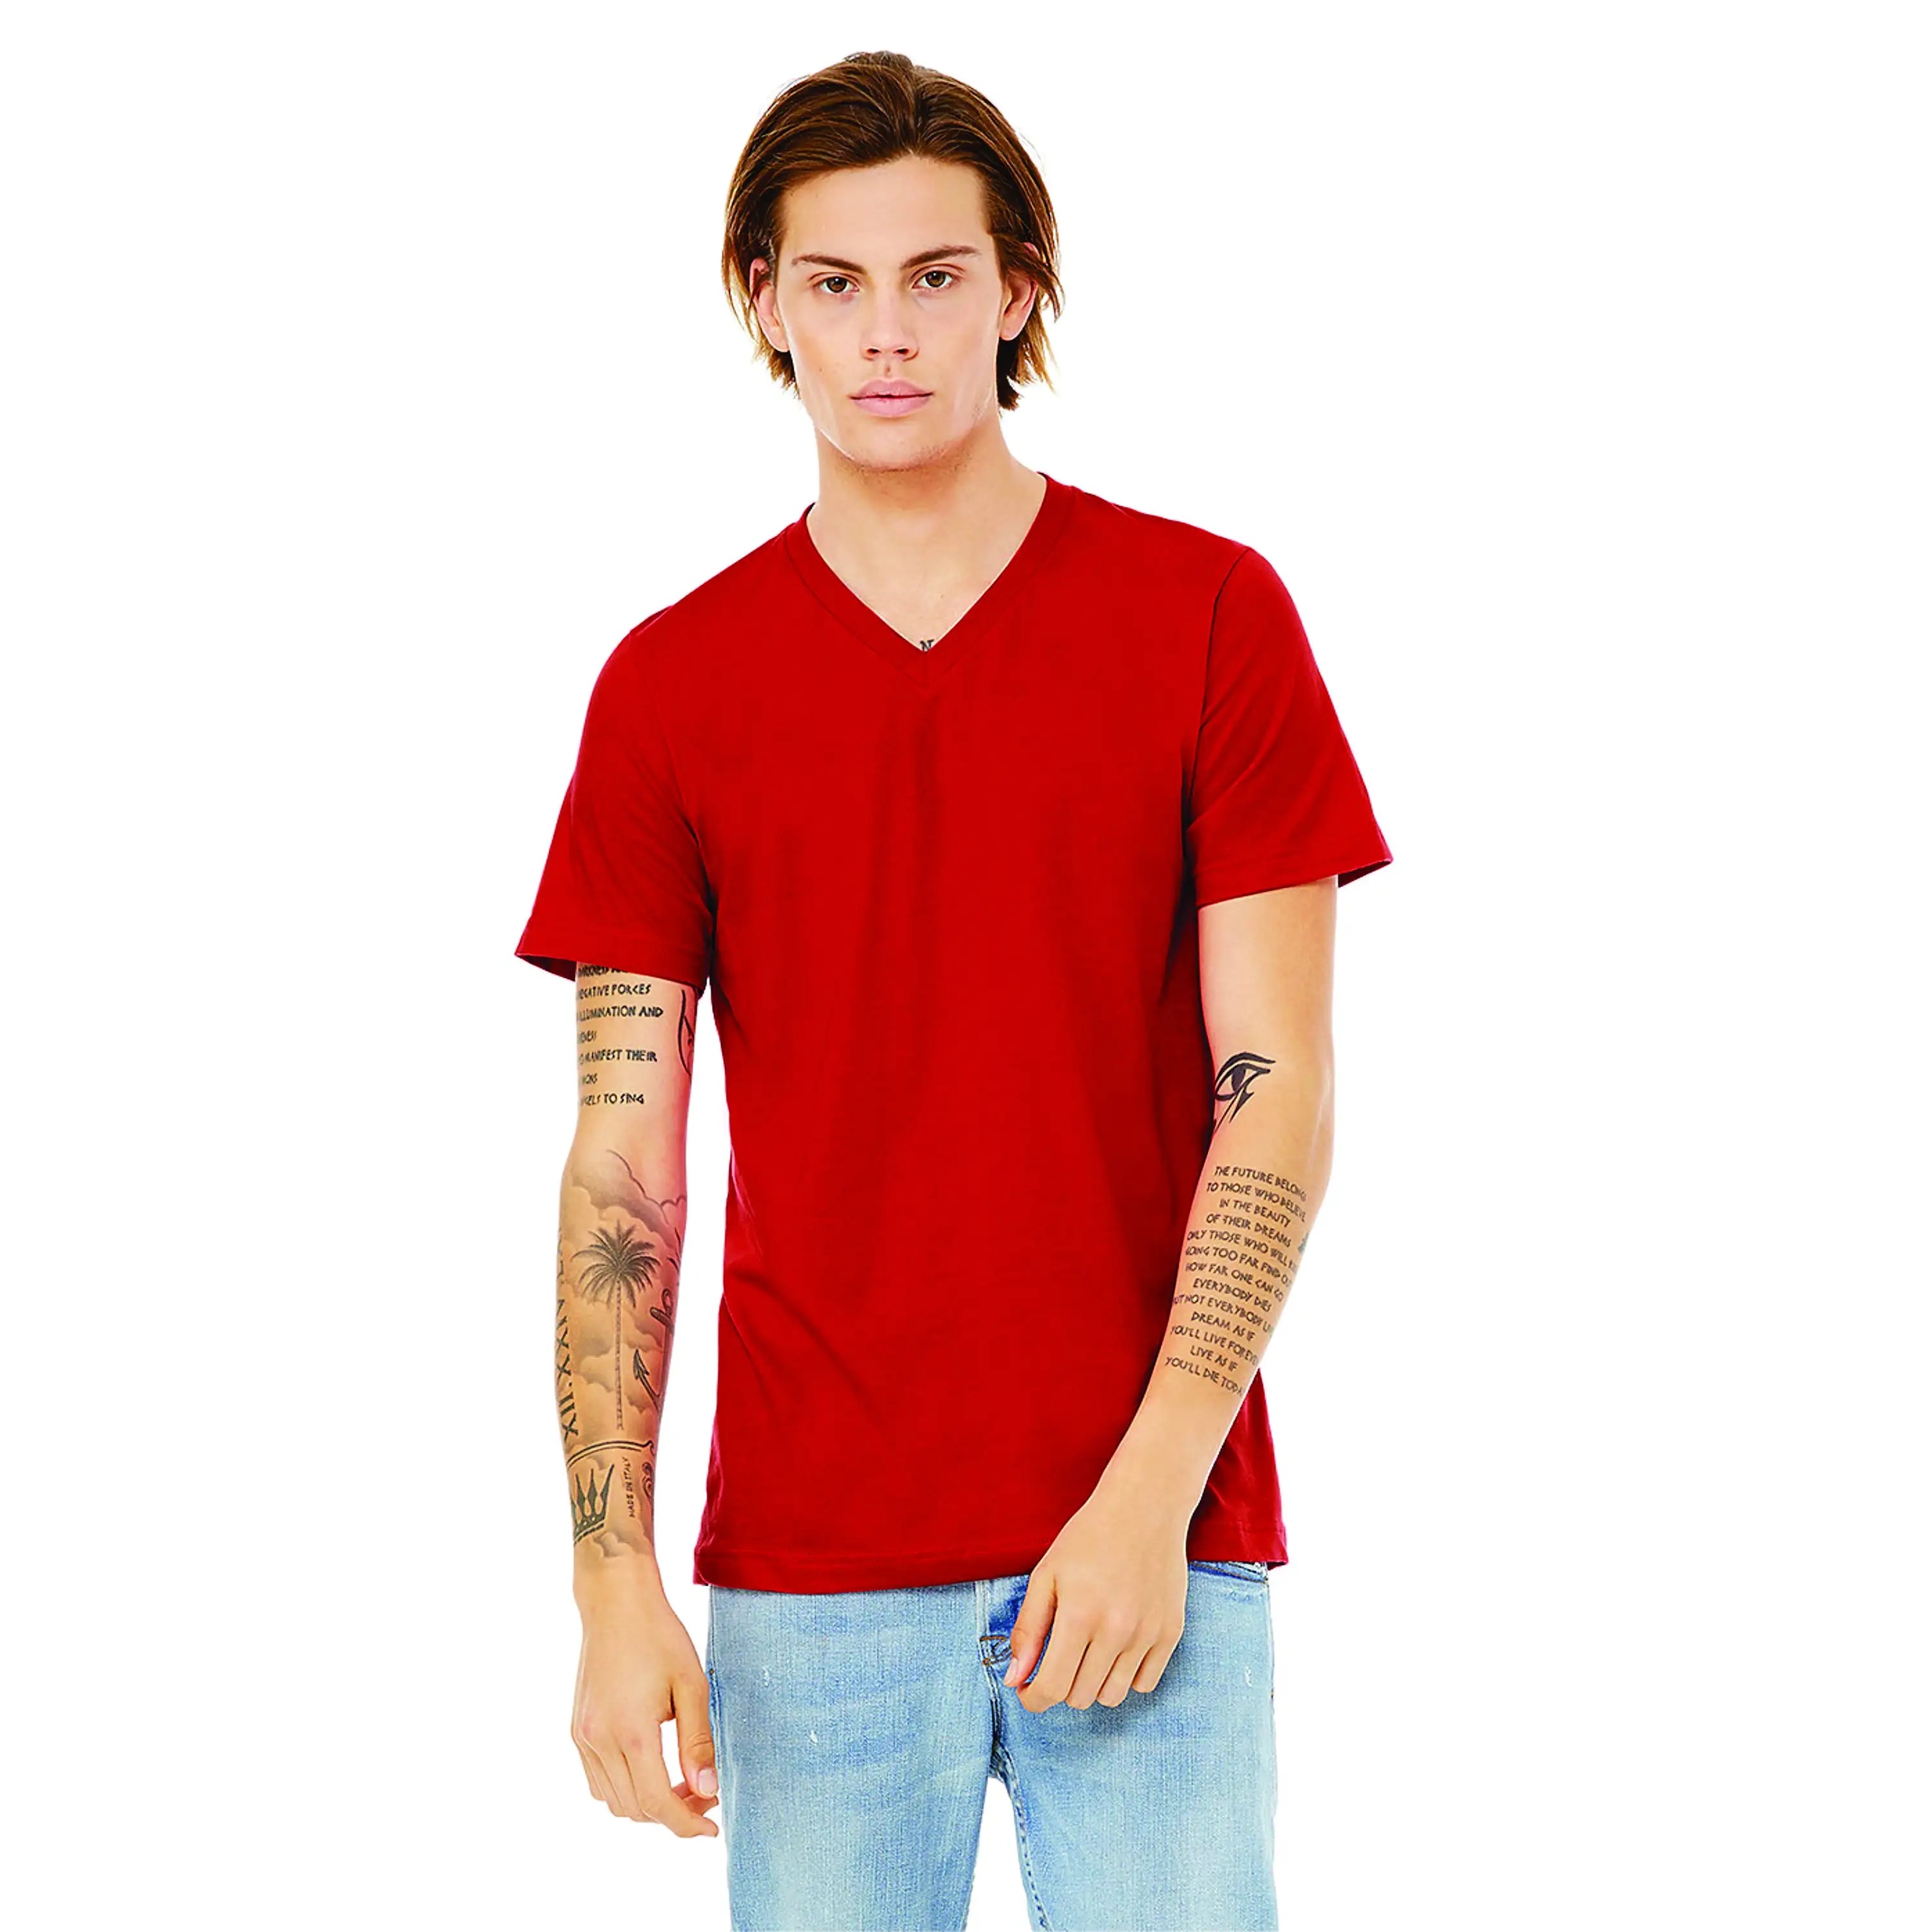 100% Airlume pettinato e Ring Spun Cotton 32 Single 4.2 oz Red Essential Unisex Jersey t-shirt manica corta con scollo a v